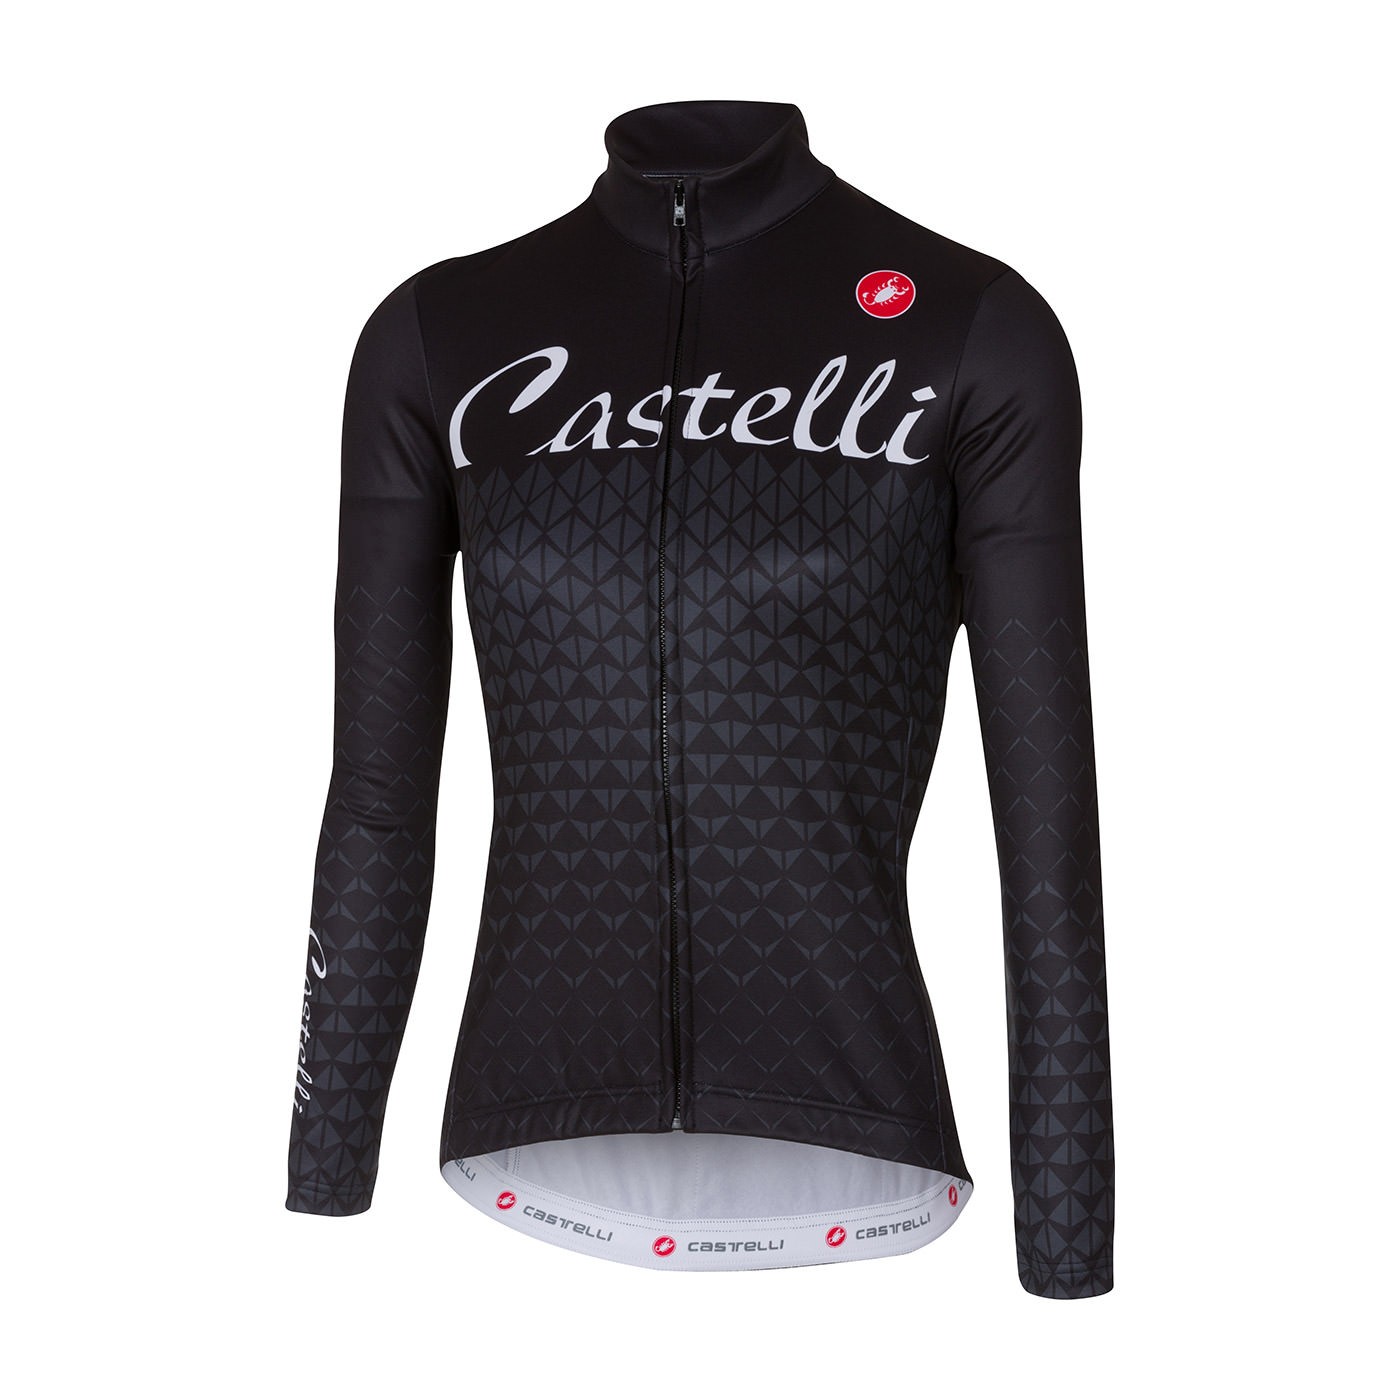 Castelli ciao dames fietsshirt lange mouwen grijs zwart